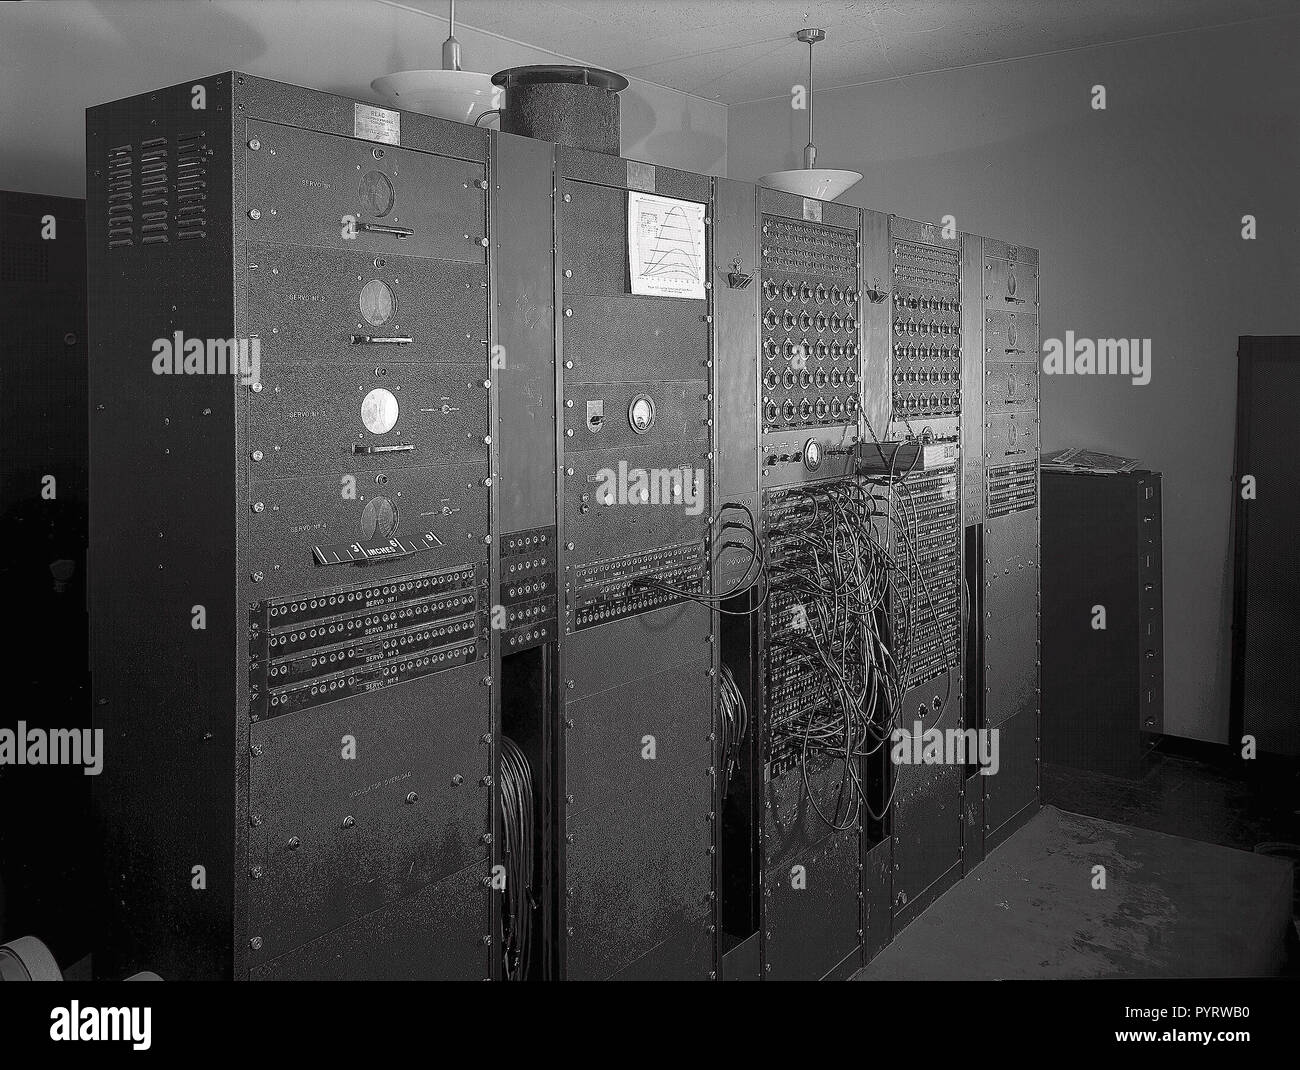 Reeves Electronic computer analogico, il primo calcolatore elettronico  installato presso la NASA Ames Research Center di Mountain View,  California, 1949. Immagine cortesia della NASA. Nota: l'immagine è stato  colorizzato digitalmente usando un